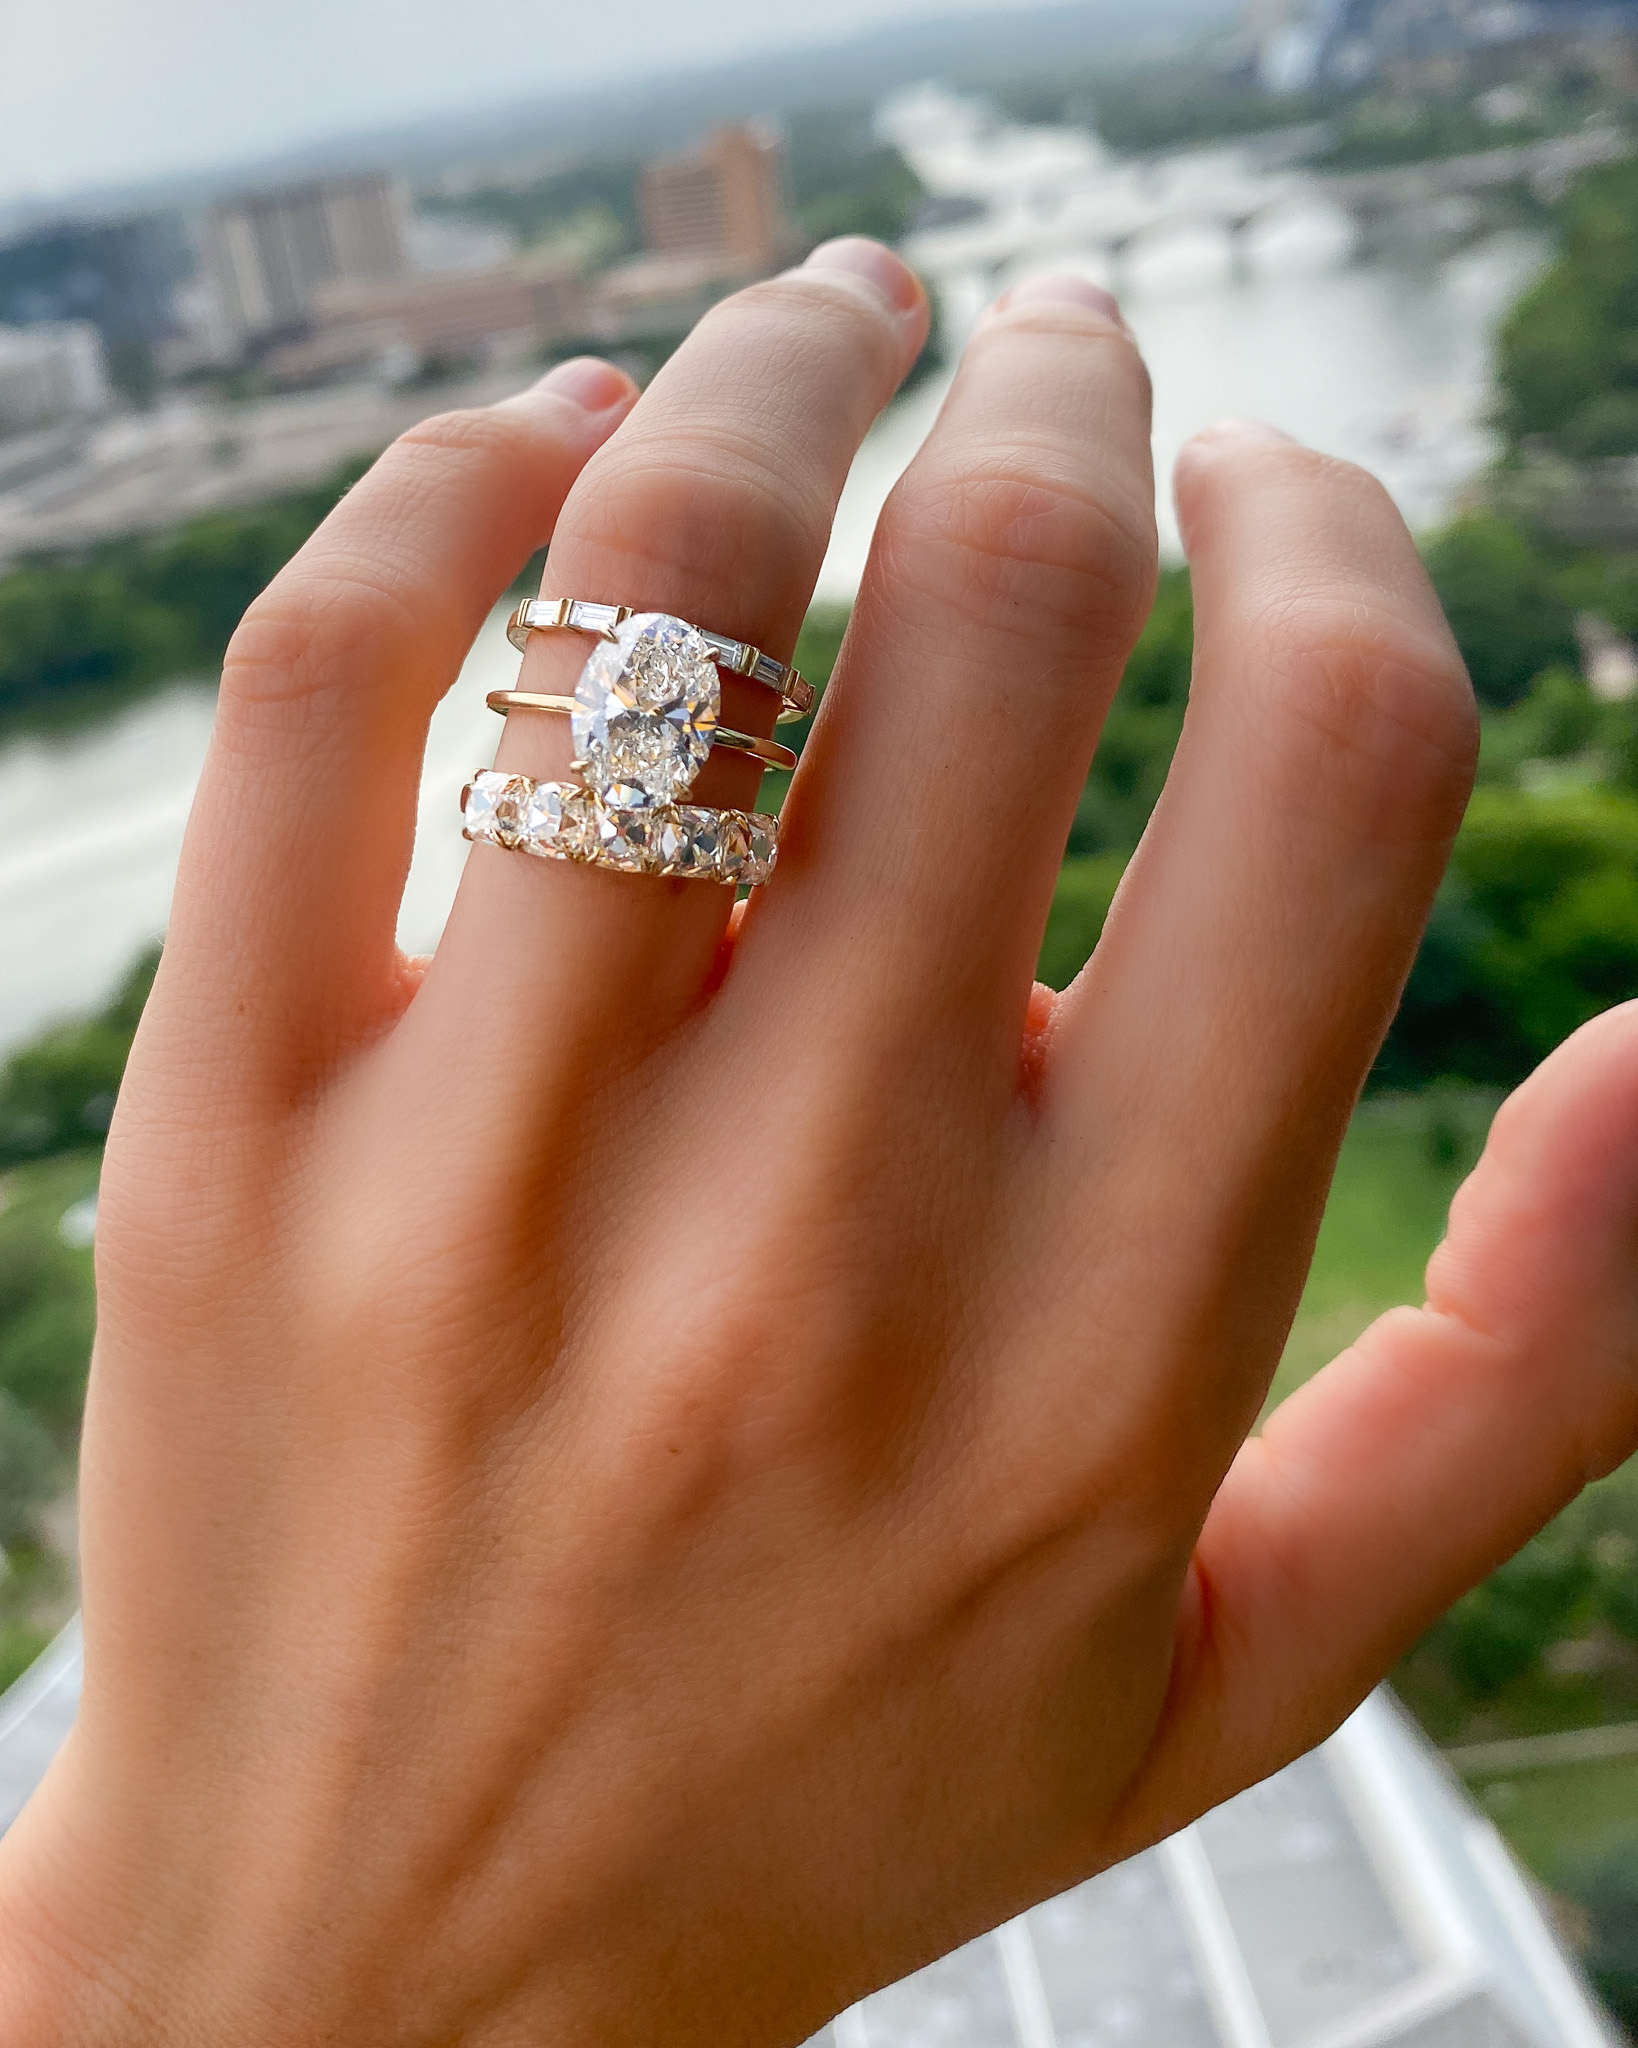 Un hermoso anillo de compromiso ovalado con un diamante en el centro.